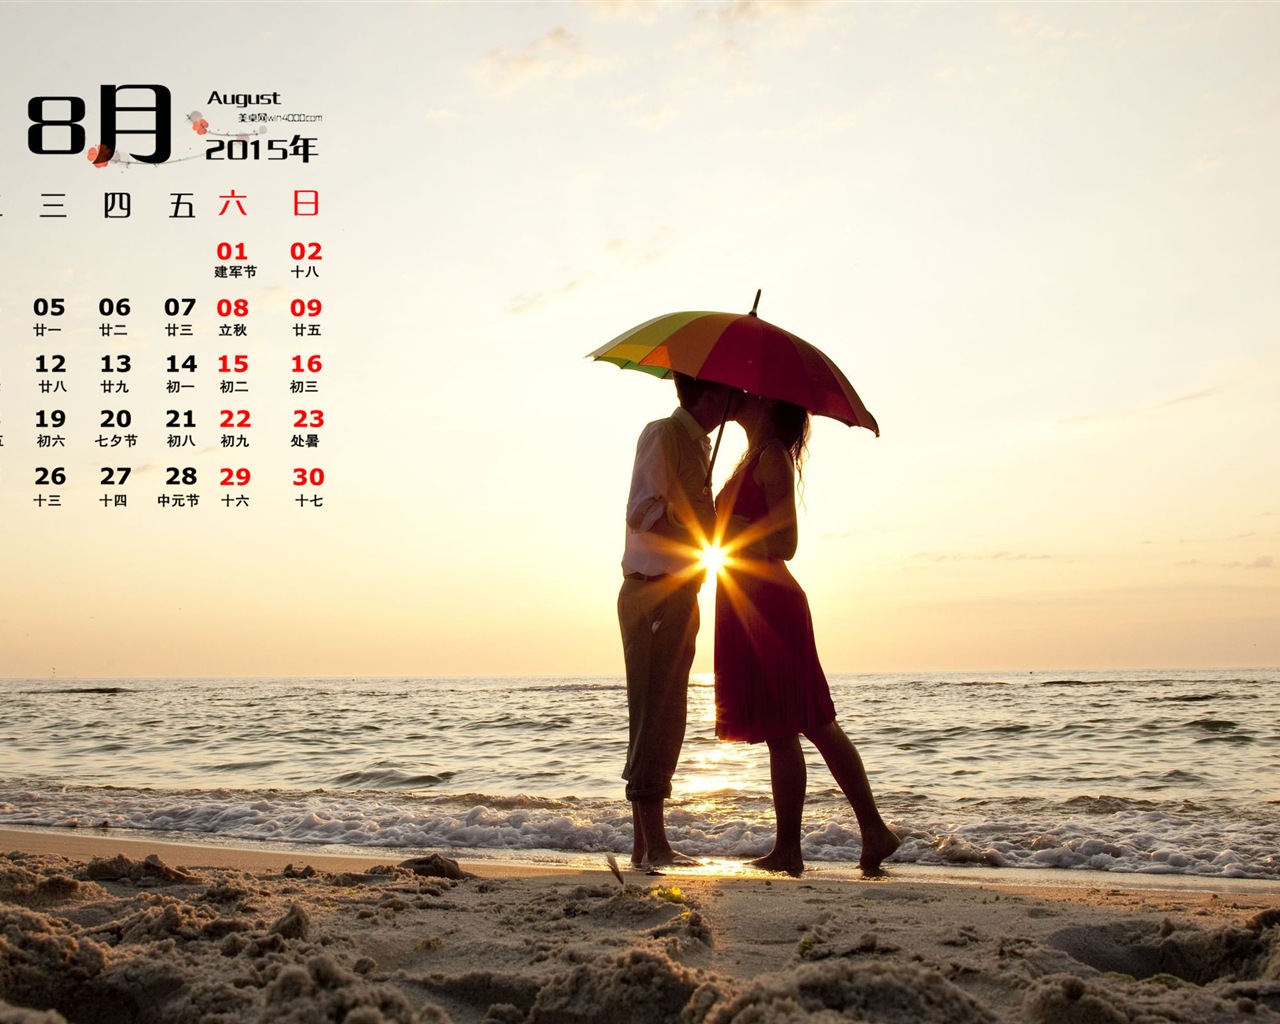 August 2015 Kalender Wallpaper (1) #14 - 1280x1024